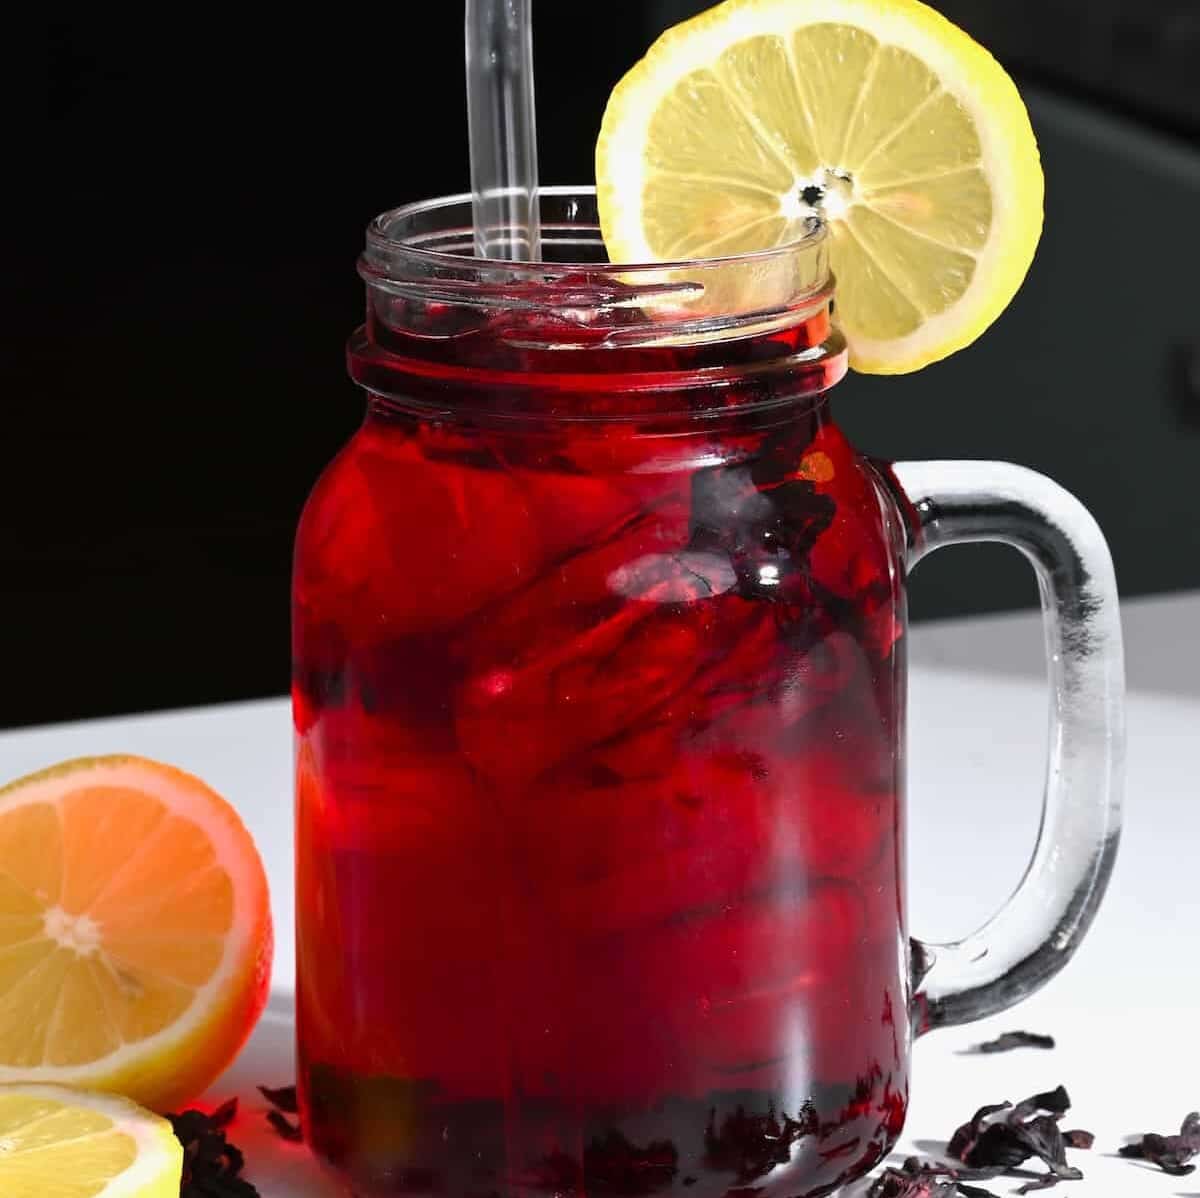 A mason jar with red tea and a lemon slice